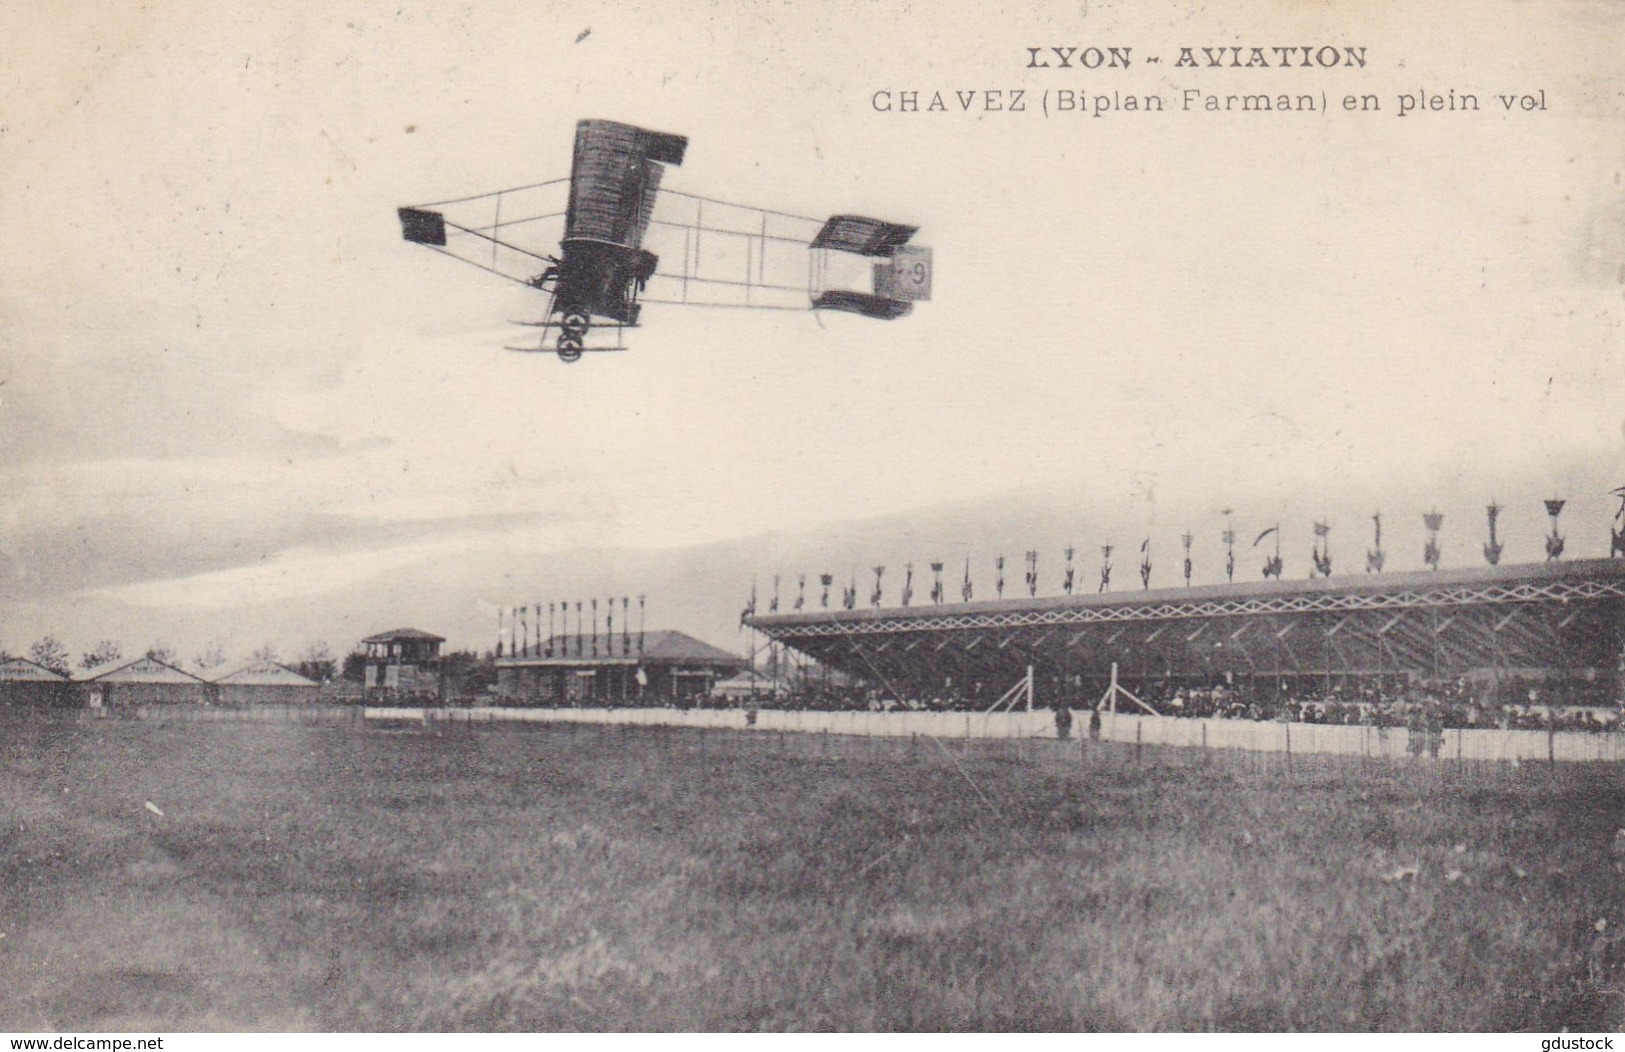 Lyon-Aviation - Chavez (biplan Farman) En Plein Vol - Flieger